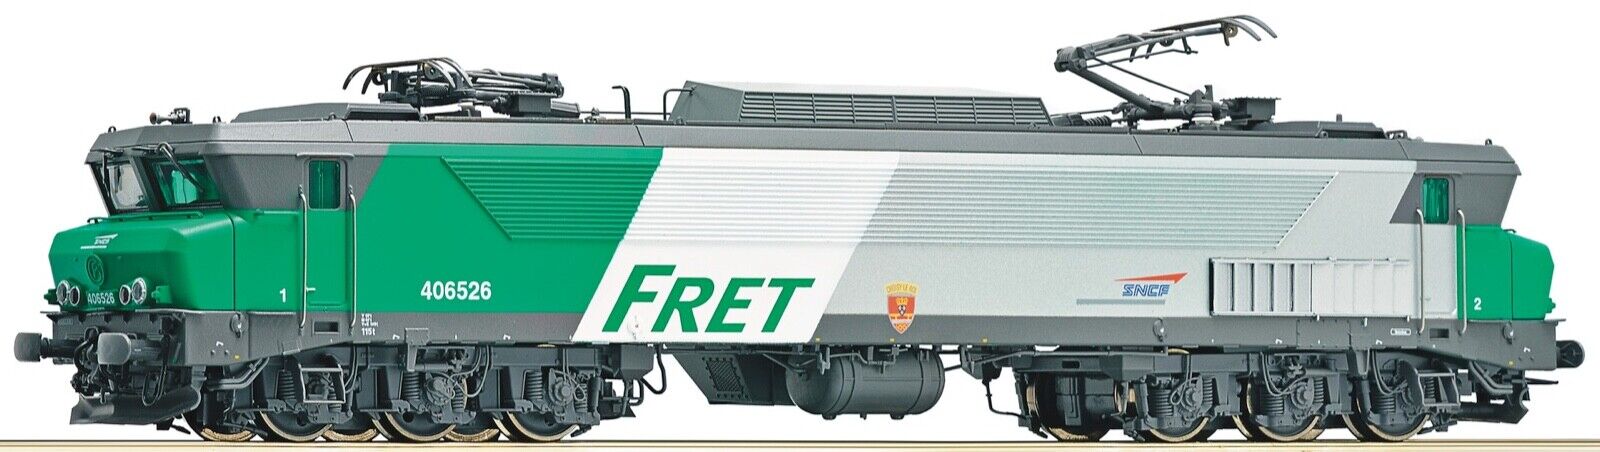 Locomotive électrique CC 40 6526 livrée ” Frêt”‚ interface digitale